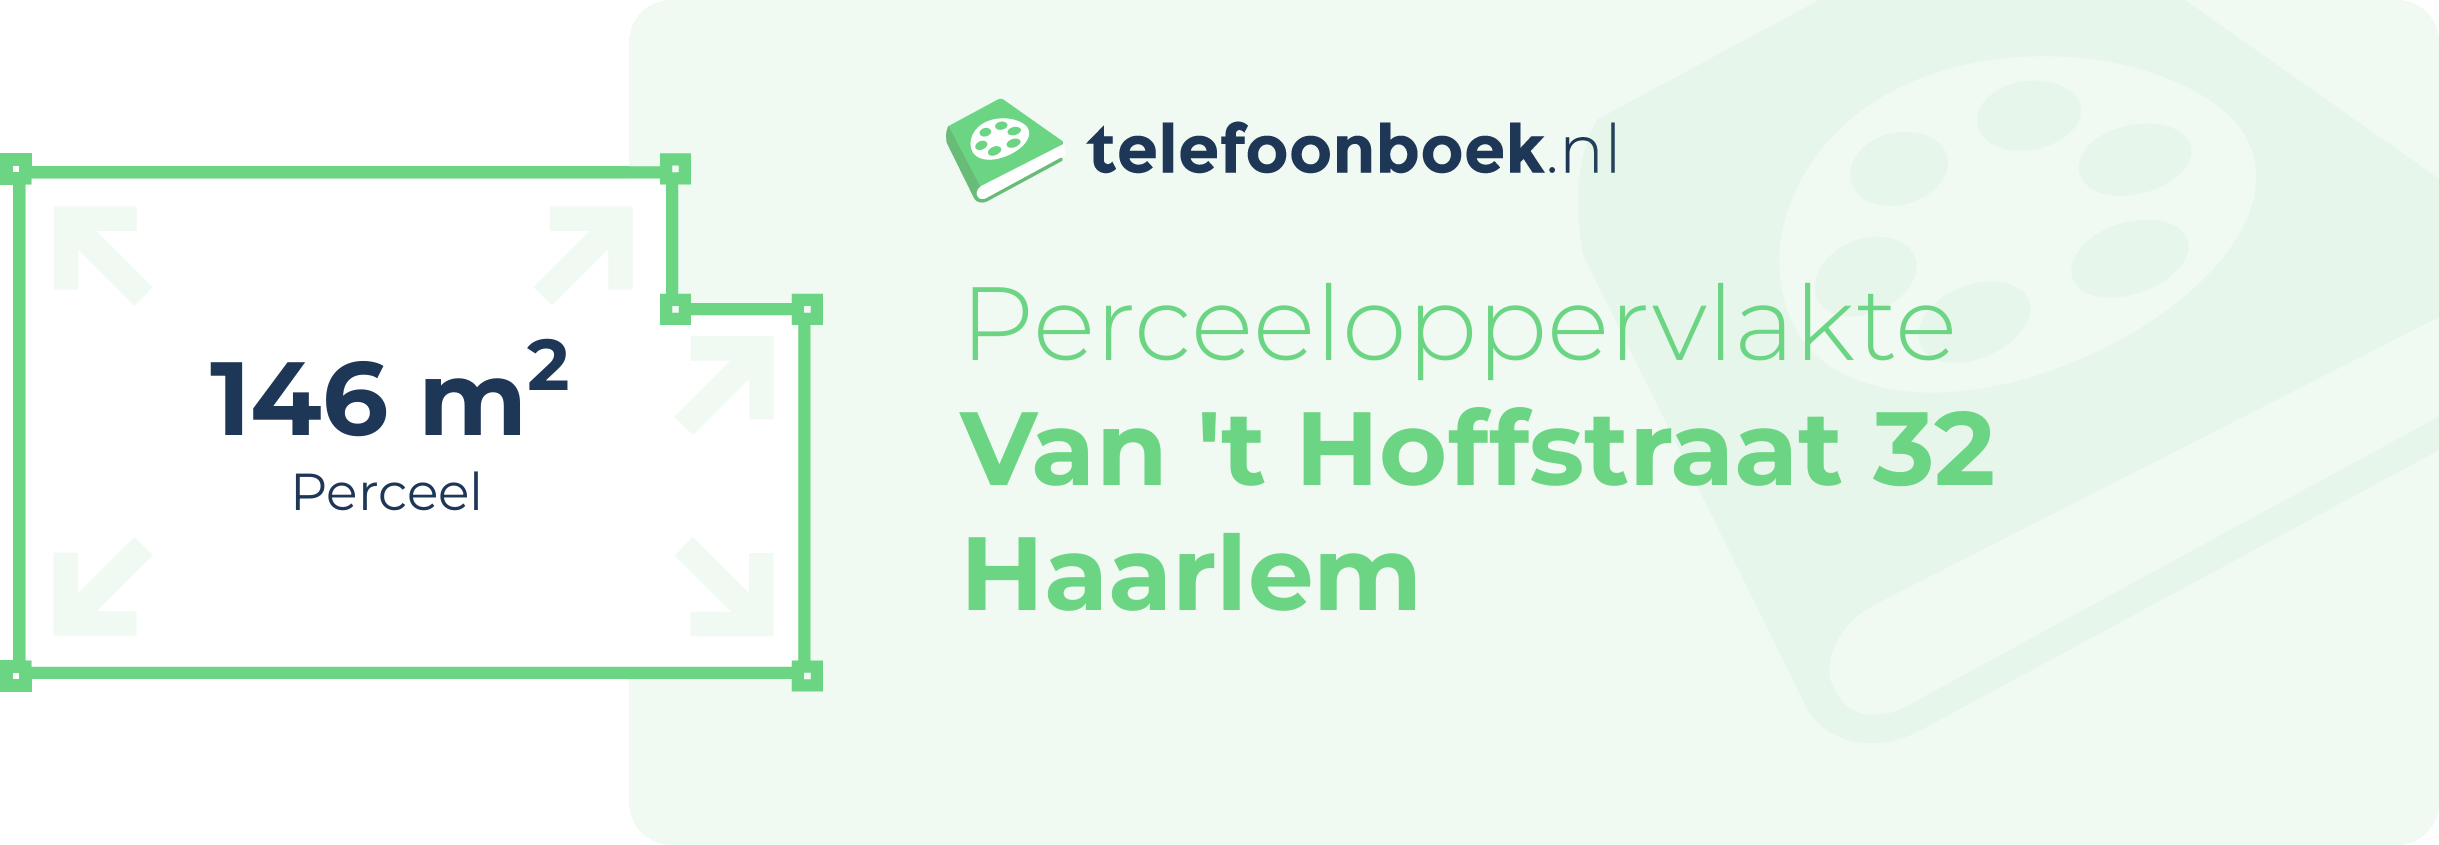 Perceeloppervlakte Van 't Hoffstraat 32 Haarlem